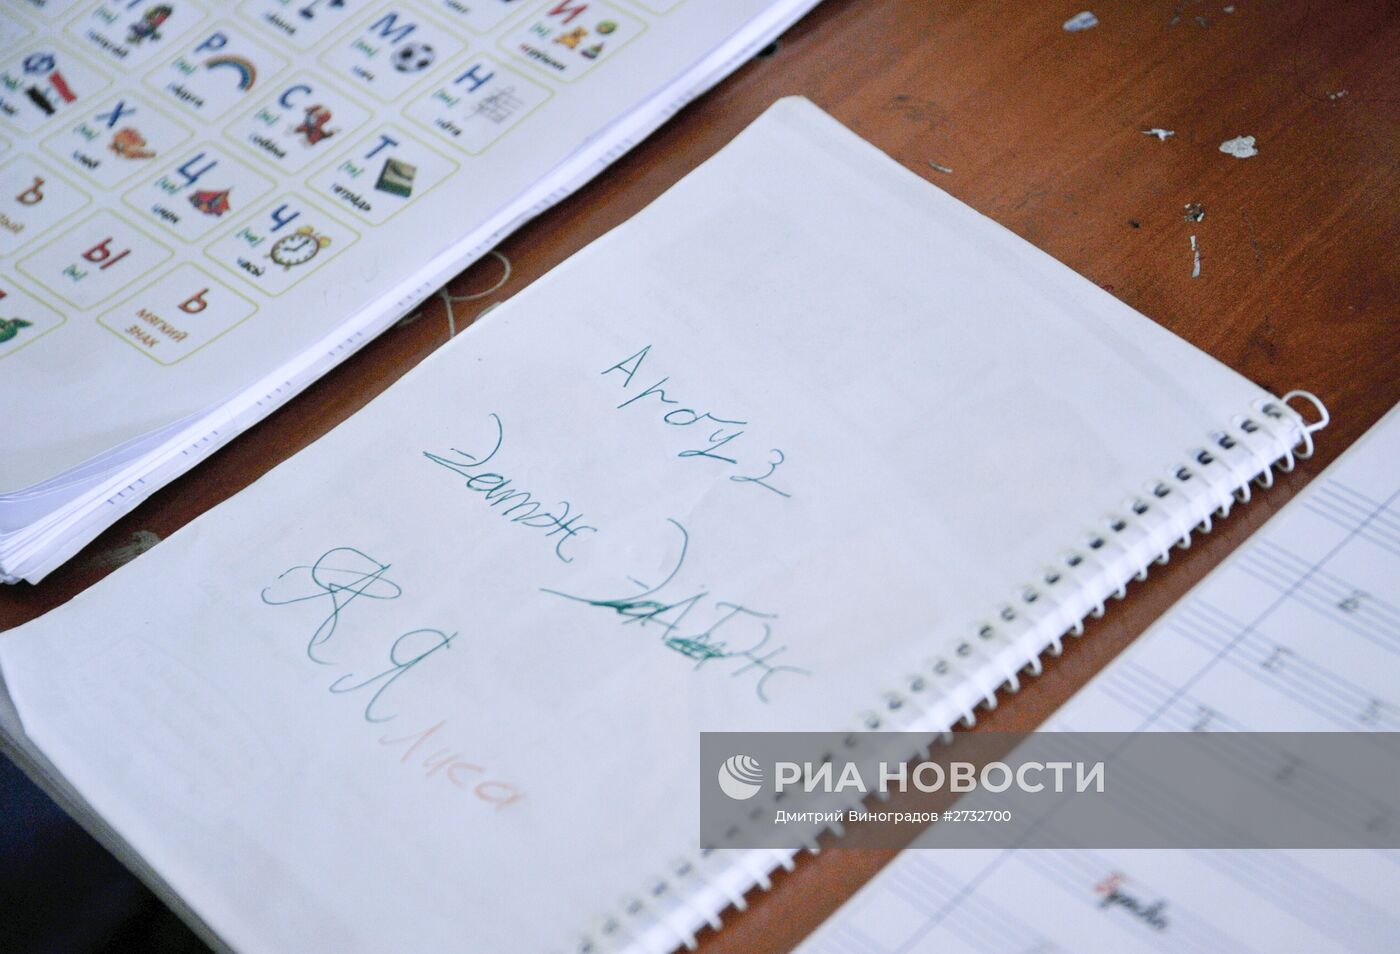 Занятие по русскому языку в школе в Сирии